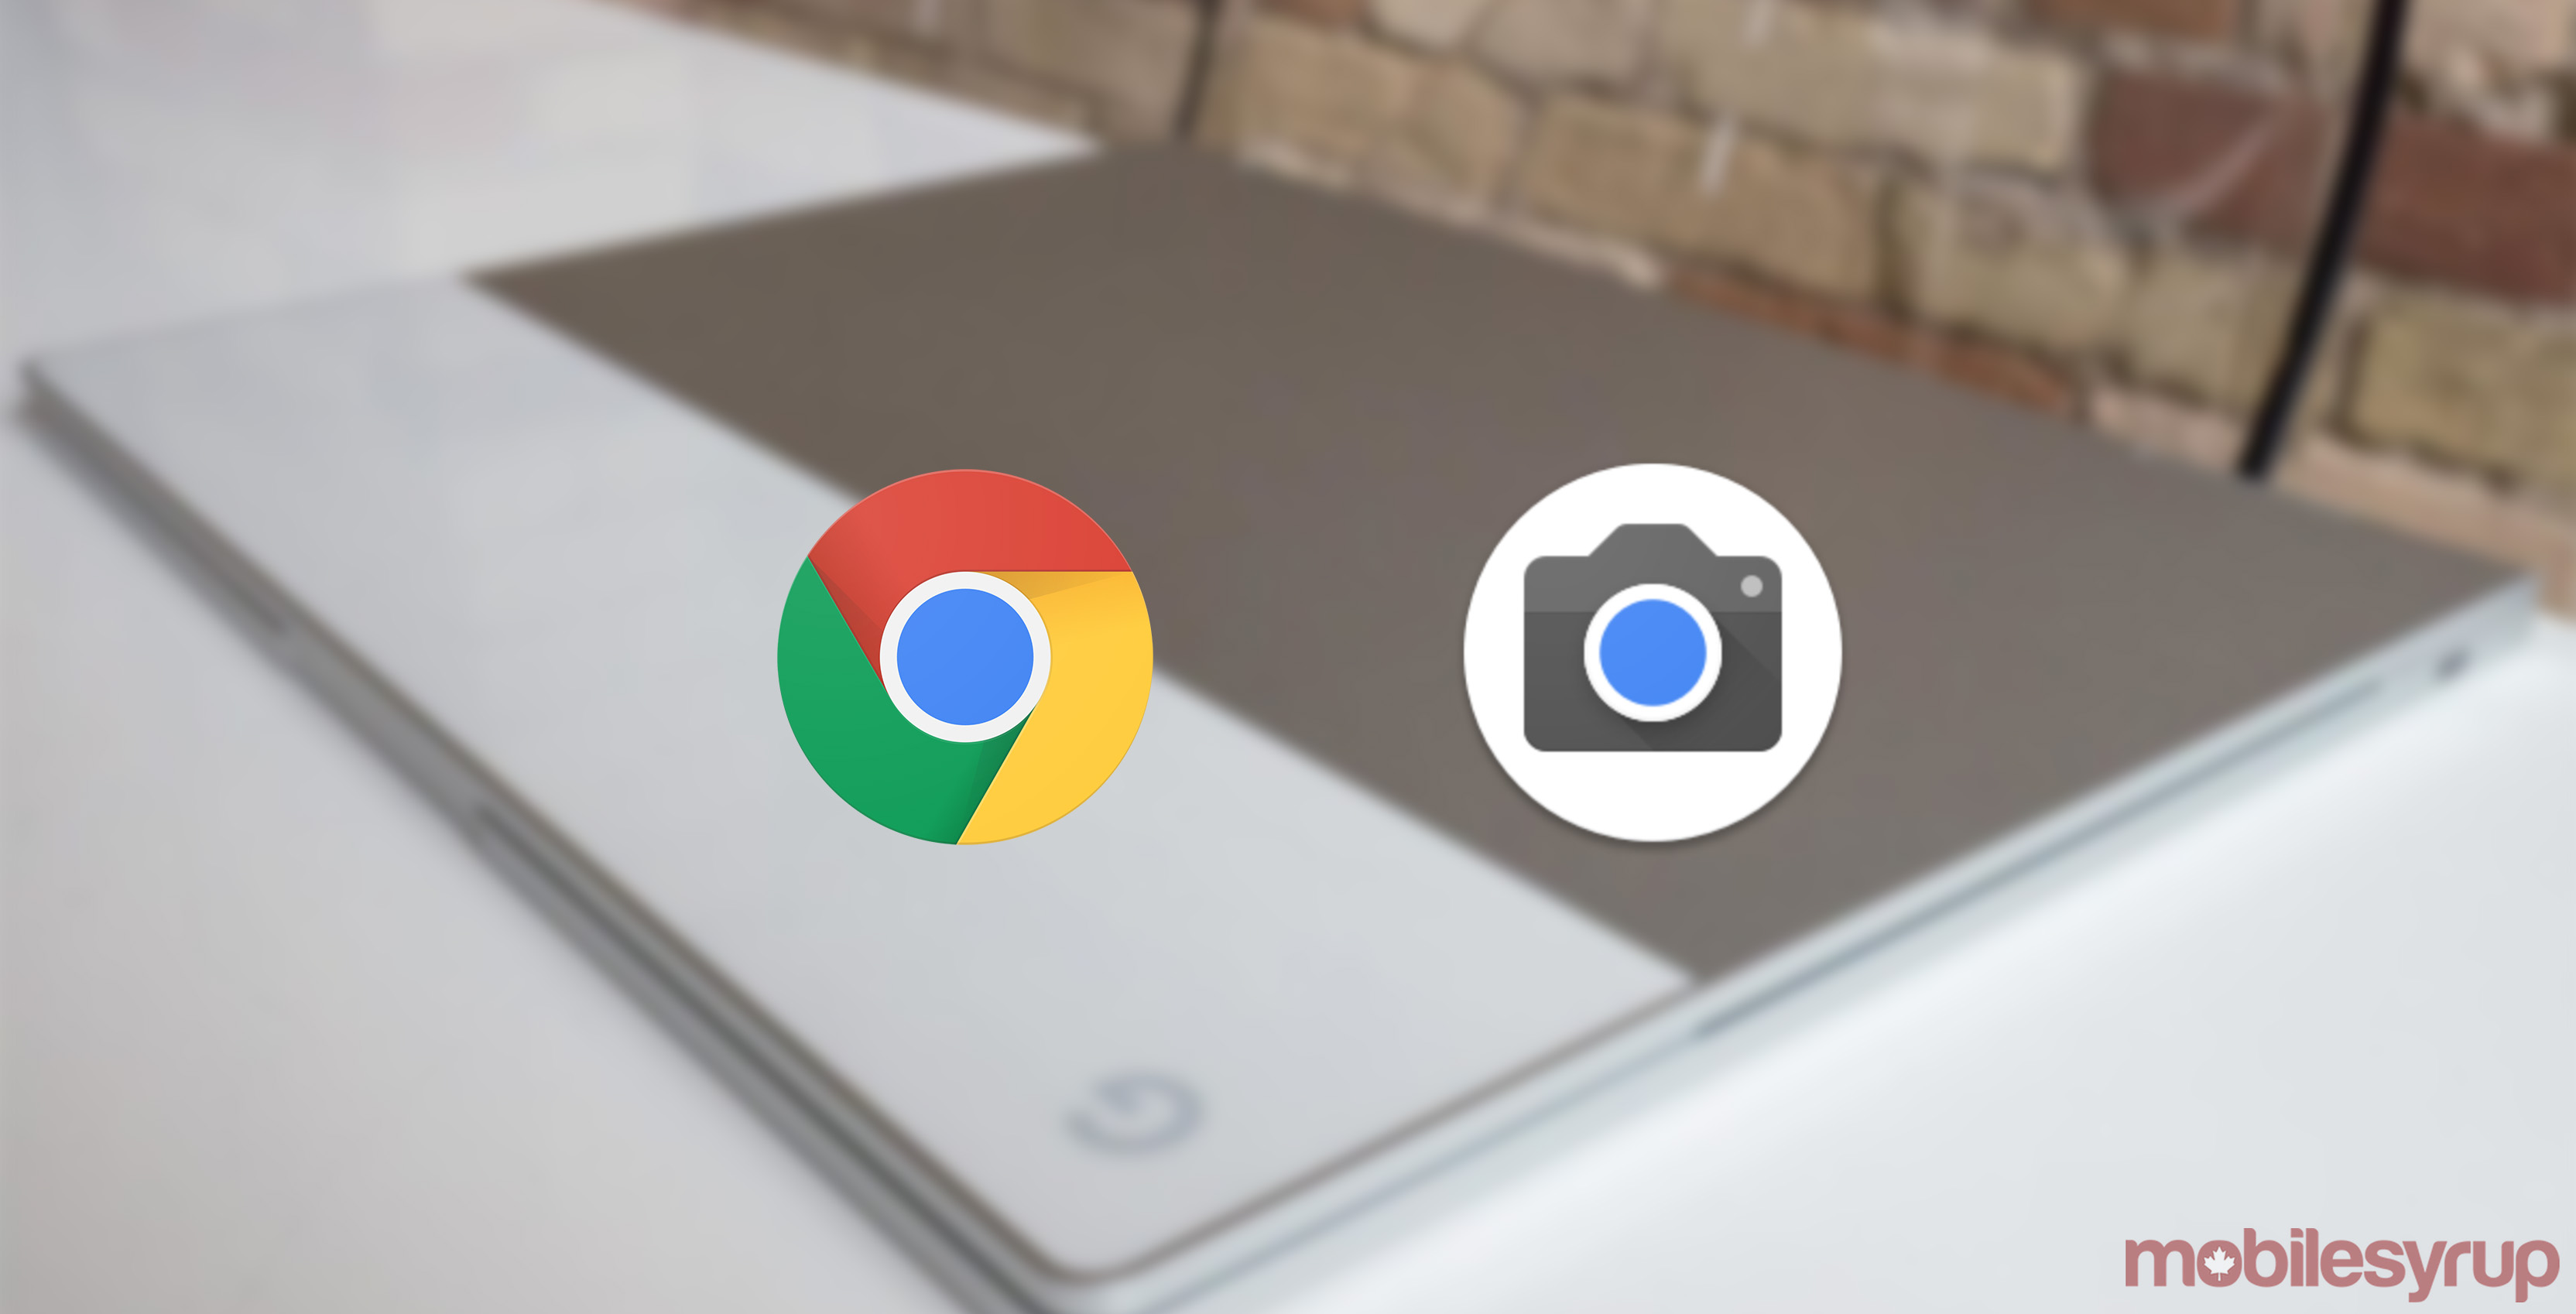 Chrome and Google Camera app